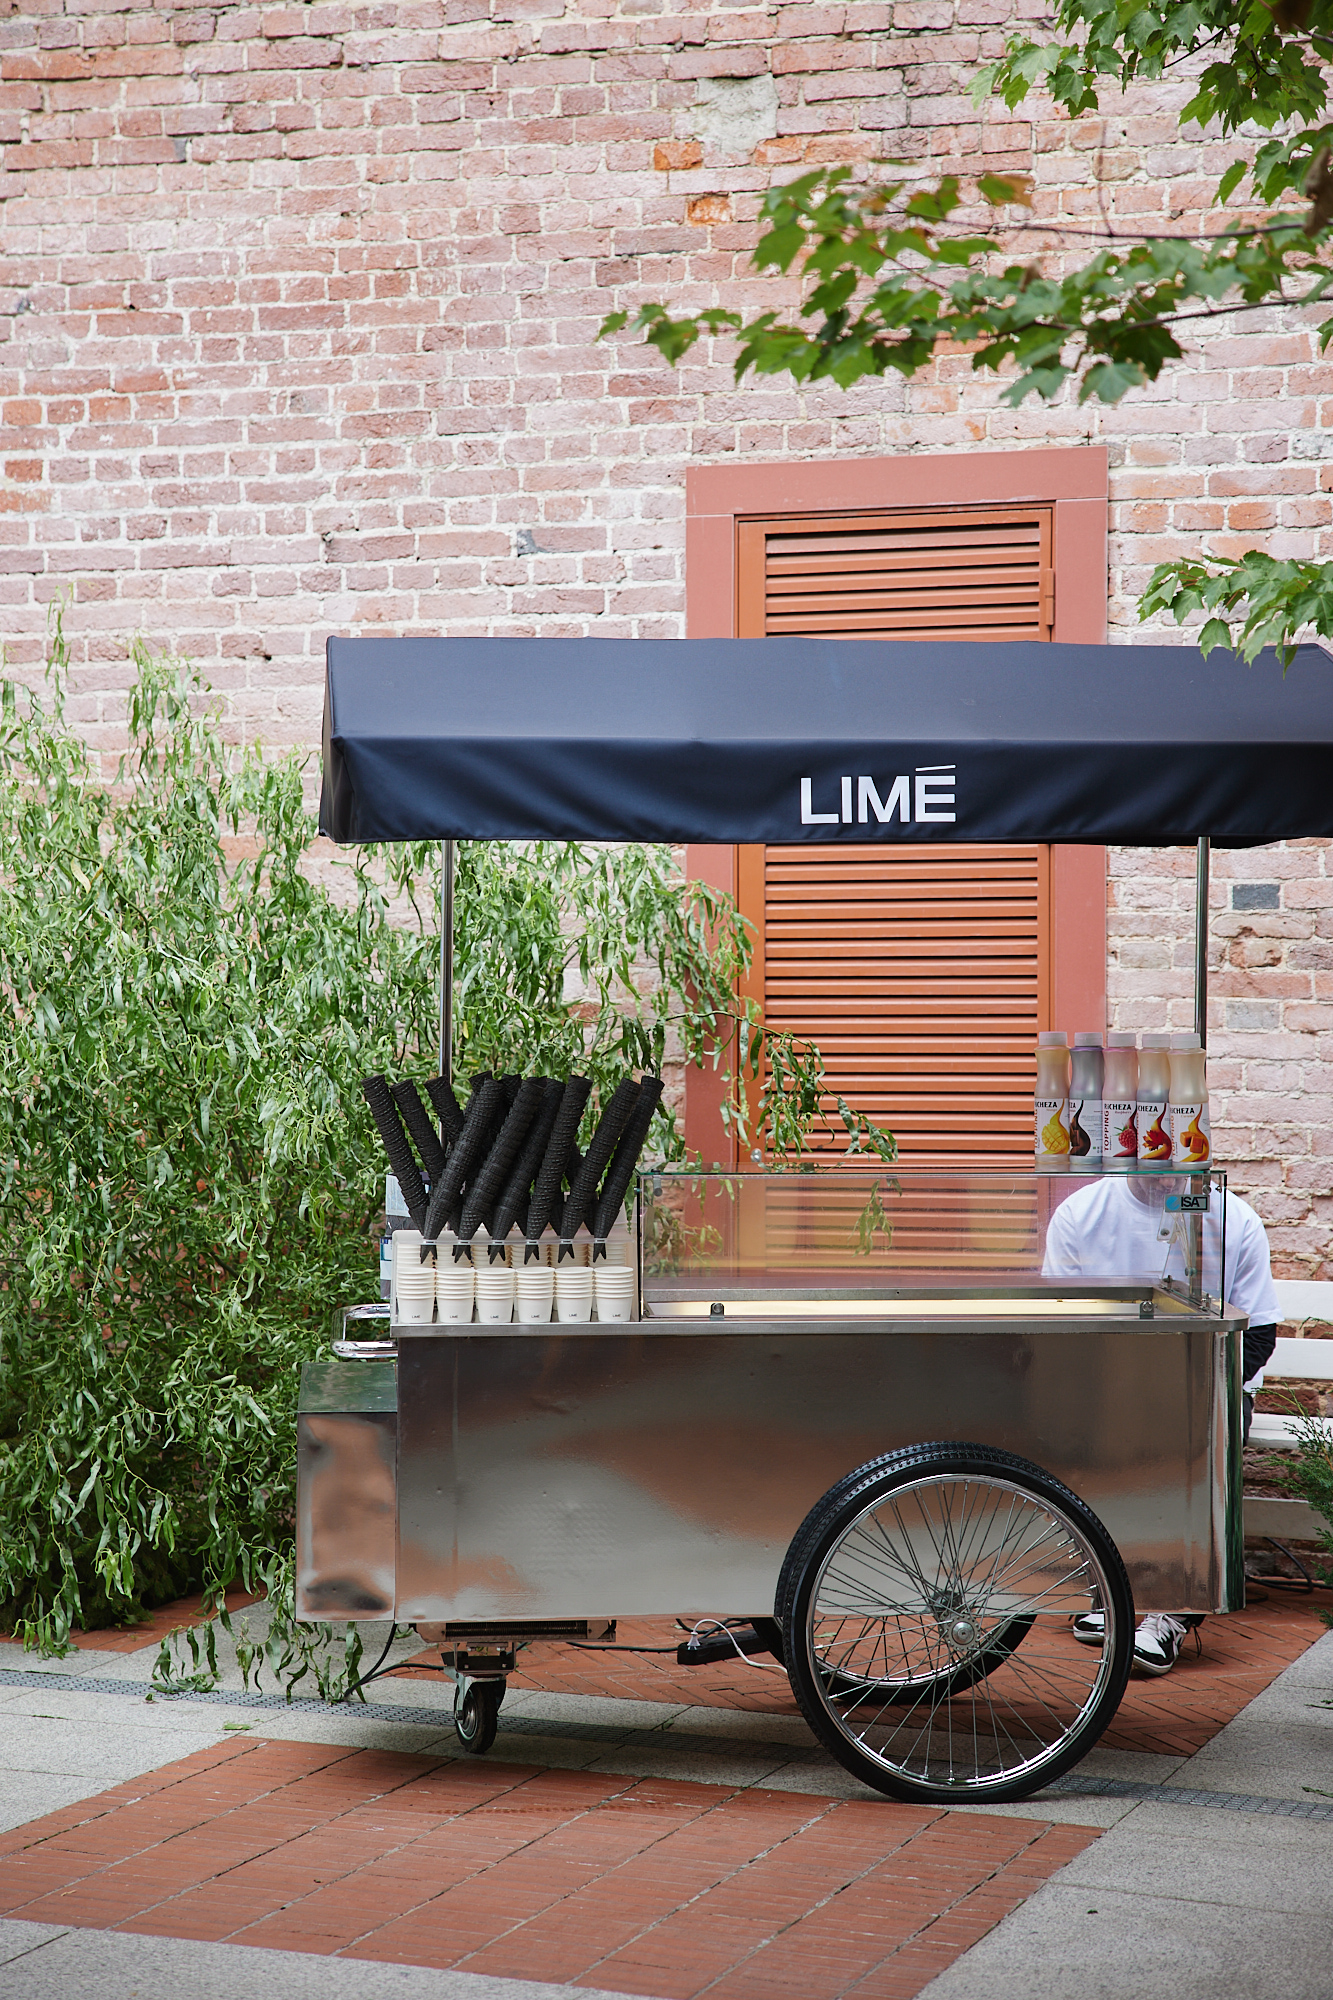 Limé запустил трак с кофе, печеньем и эксклюзивным мерчем бренда (фото 2)